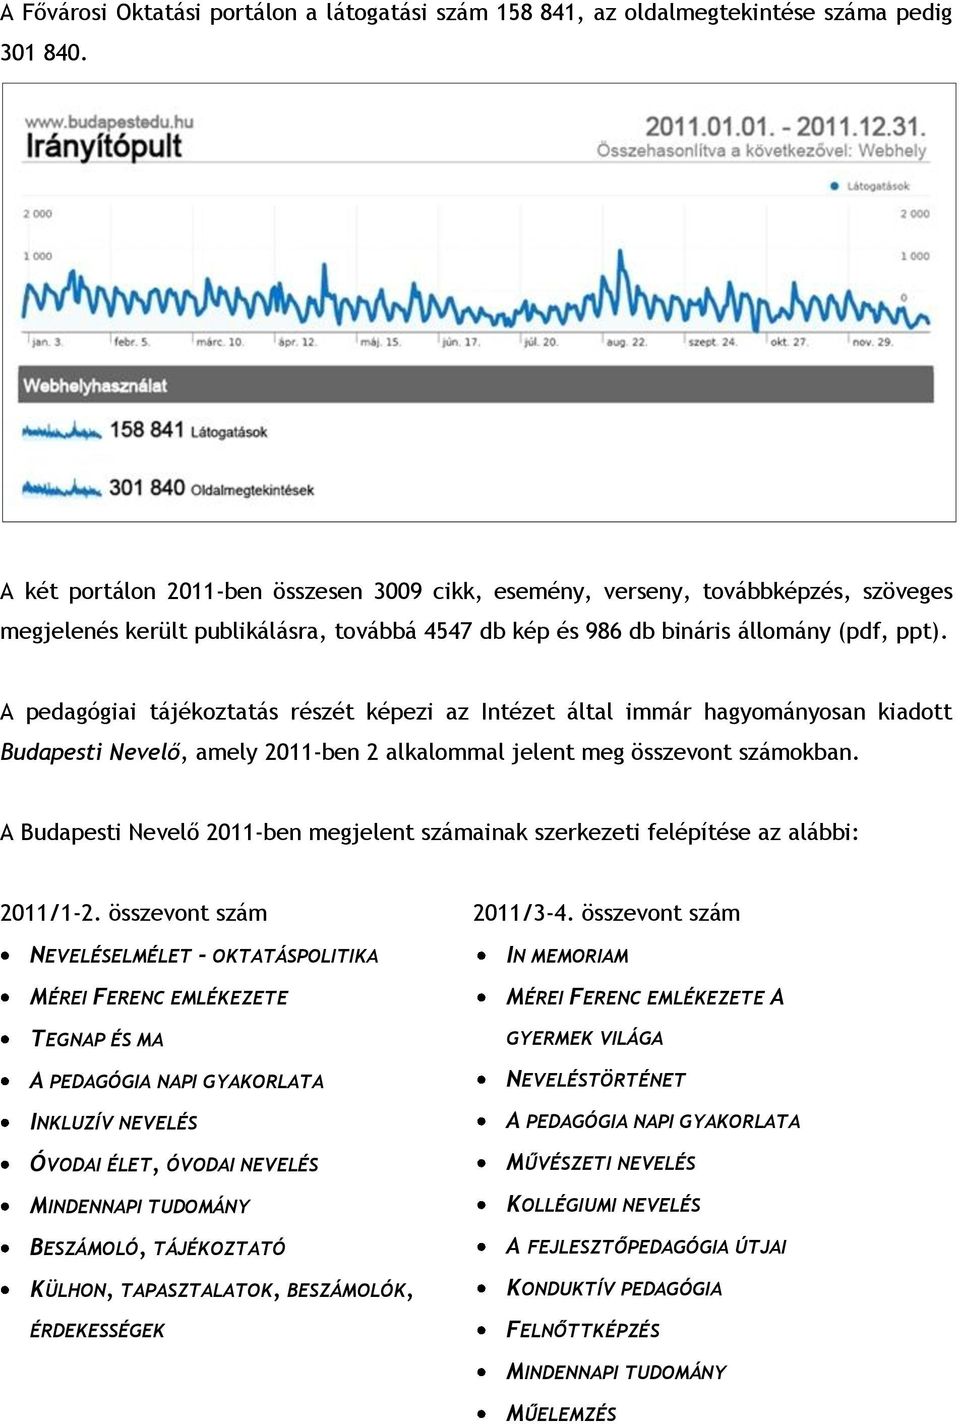 A pedagógiai tájékoztatás részét képezi az Intézet által immár hagyományosan kiadott Budapesti Nevelő, amely 2011-ben 2 alkalommal jelent meg összevont számokban.